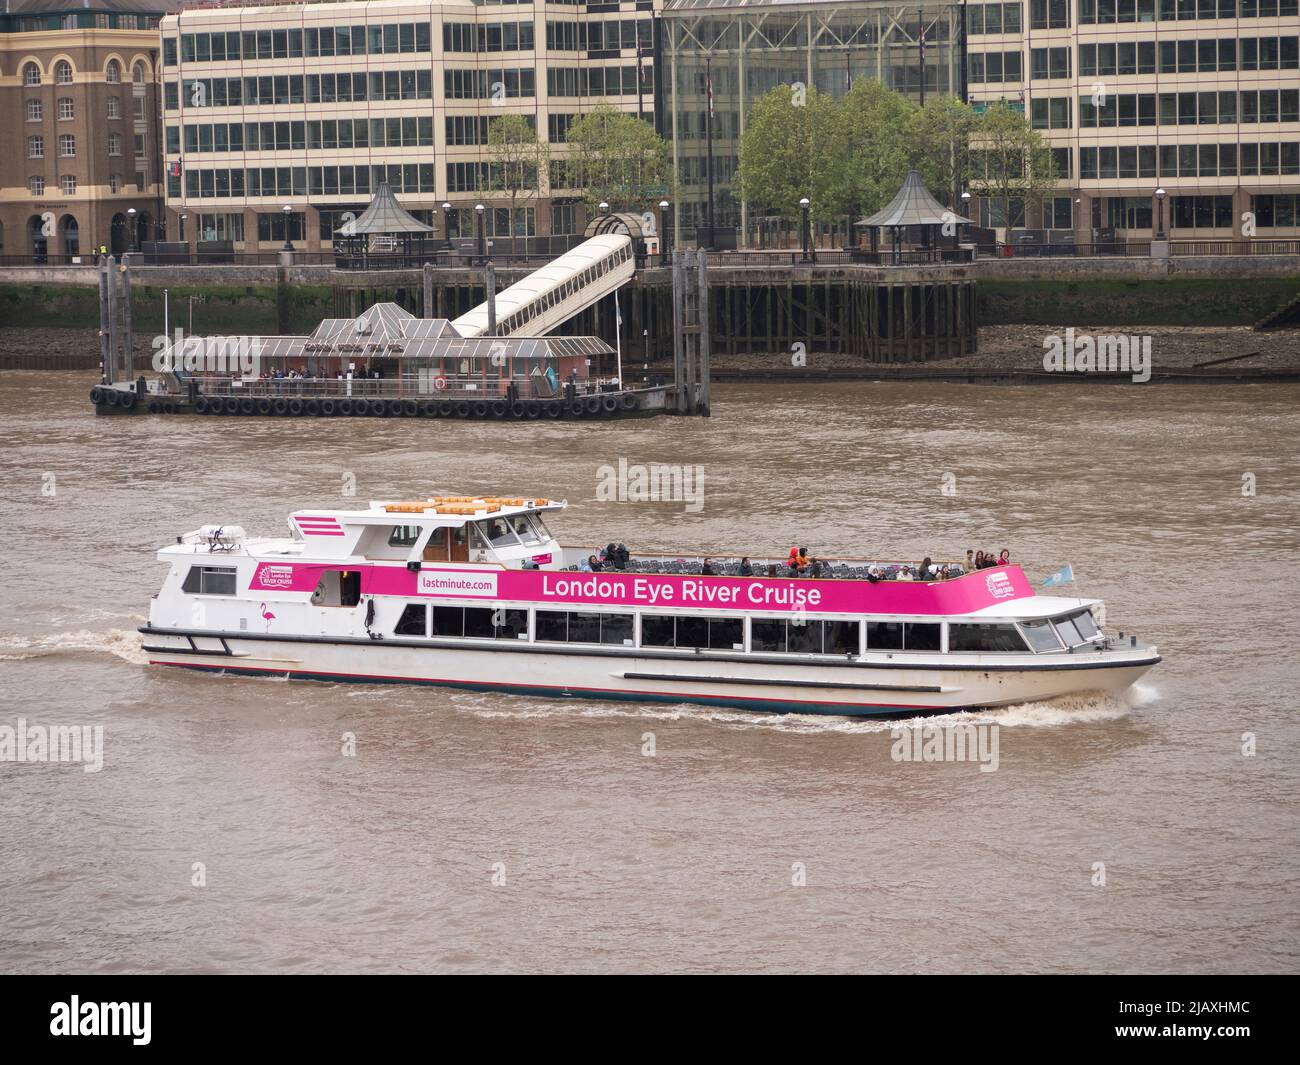 Los turistas a bordo del ferry London Eye River, Silver Bonito, recorren el río Támesis Foto de stock